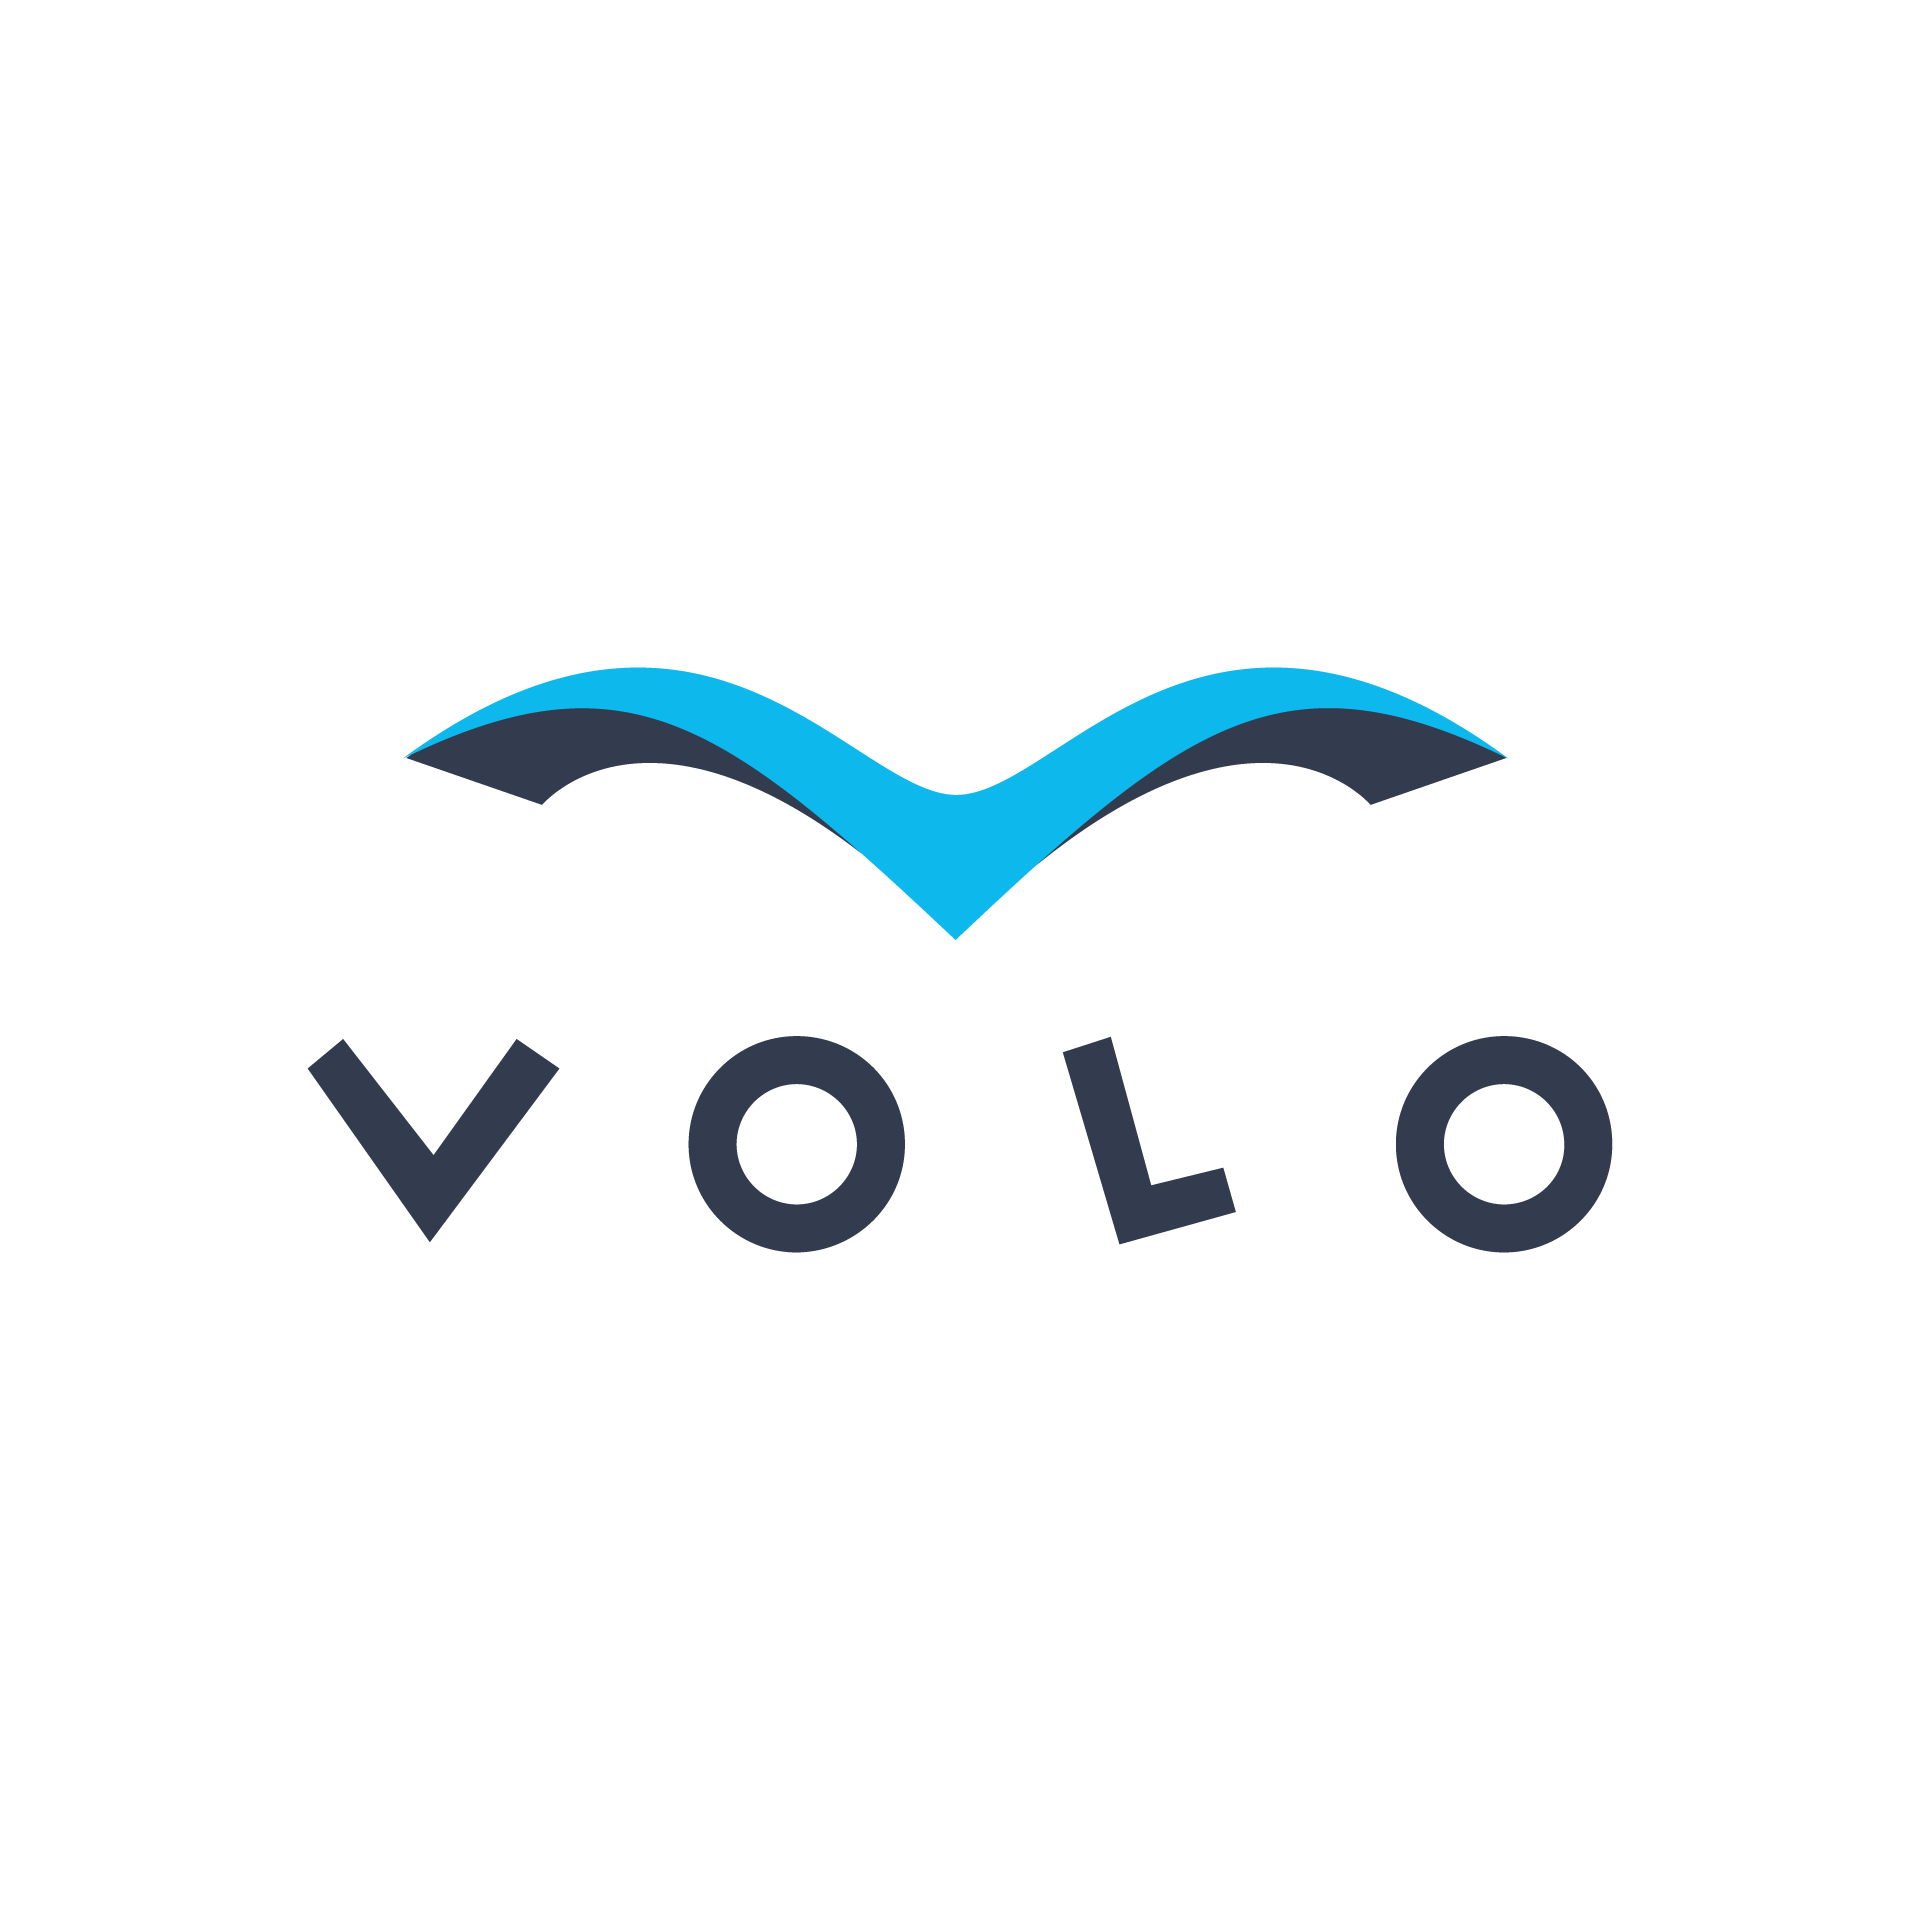 VOLO logo